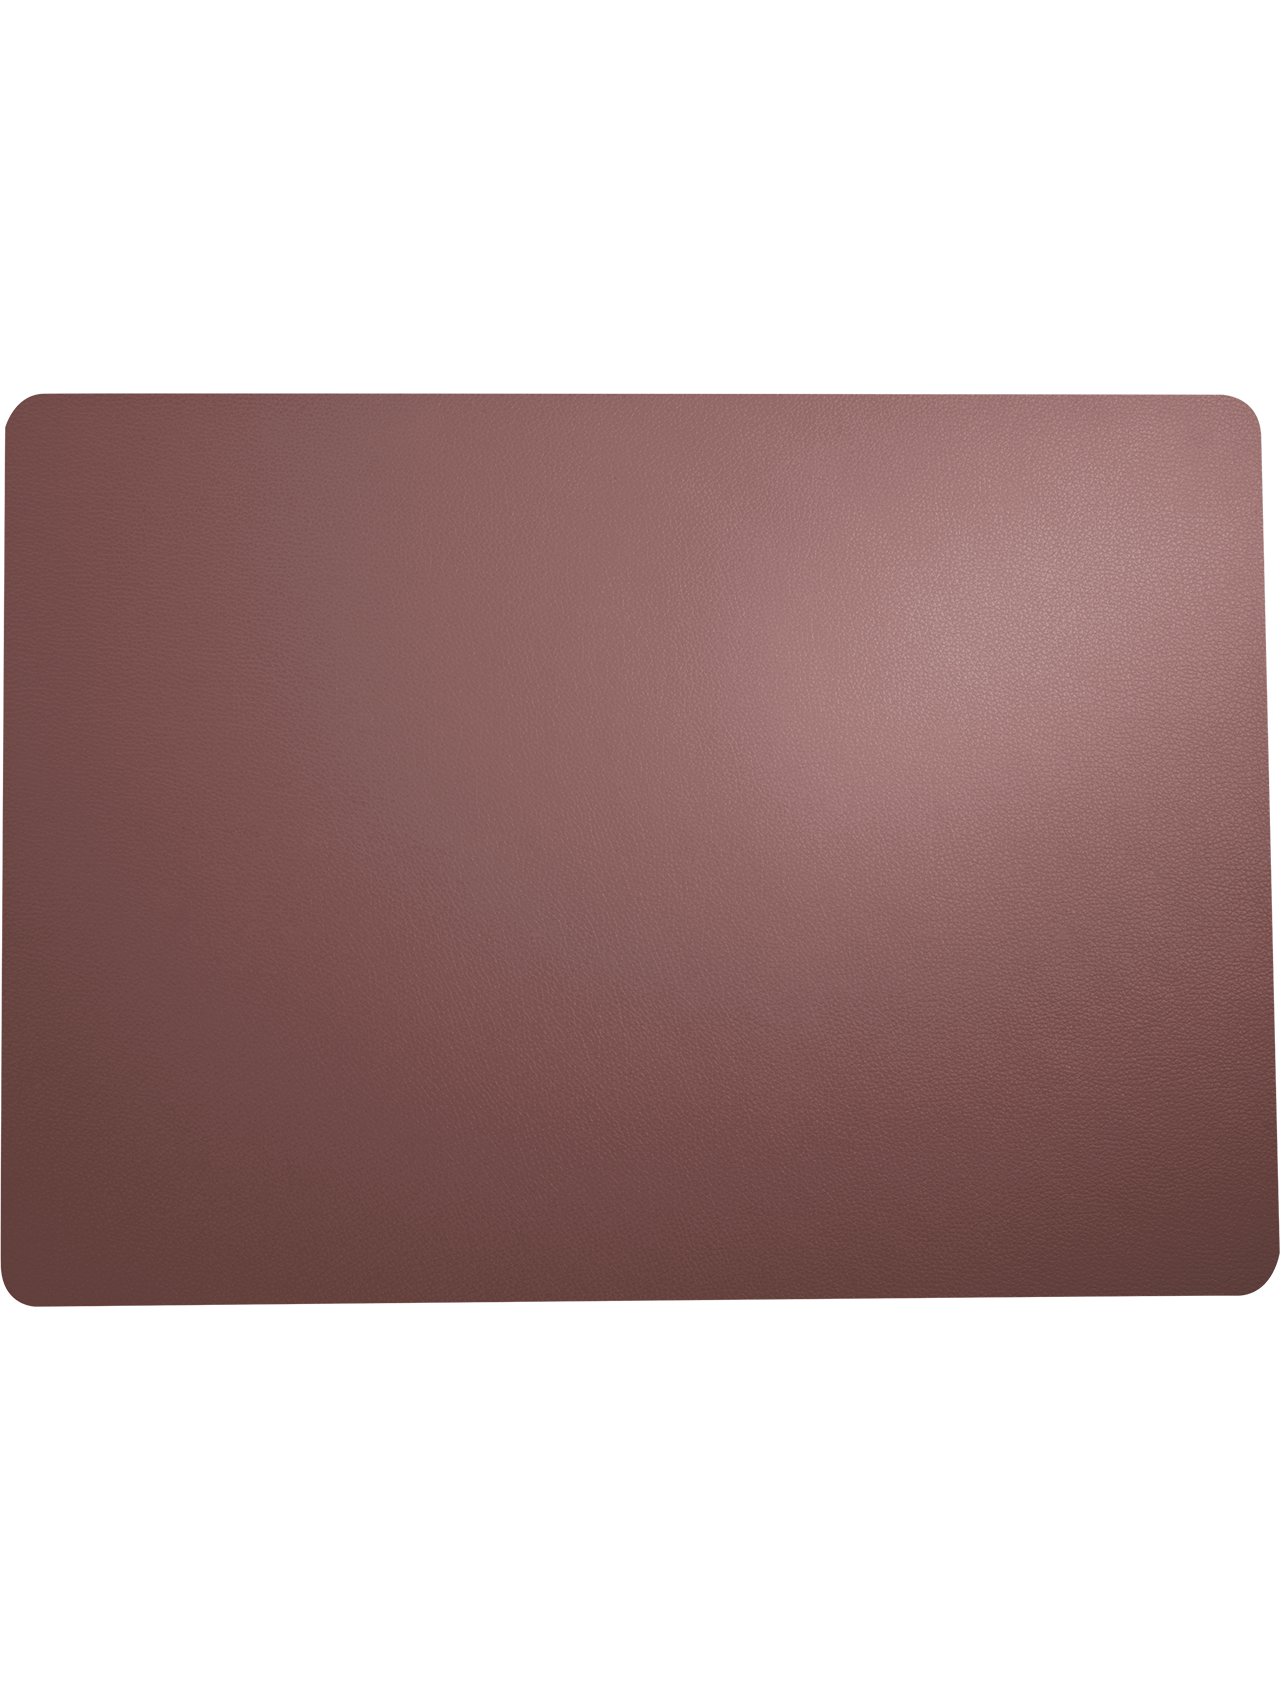 Tischset leather optic fine plum